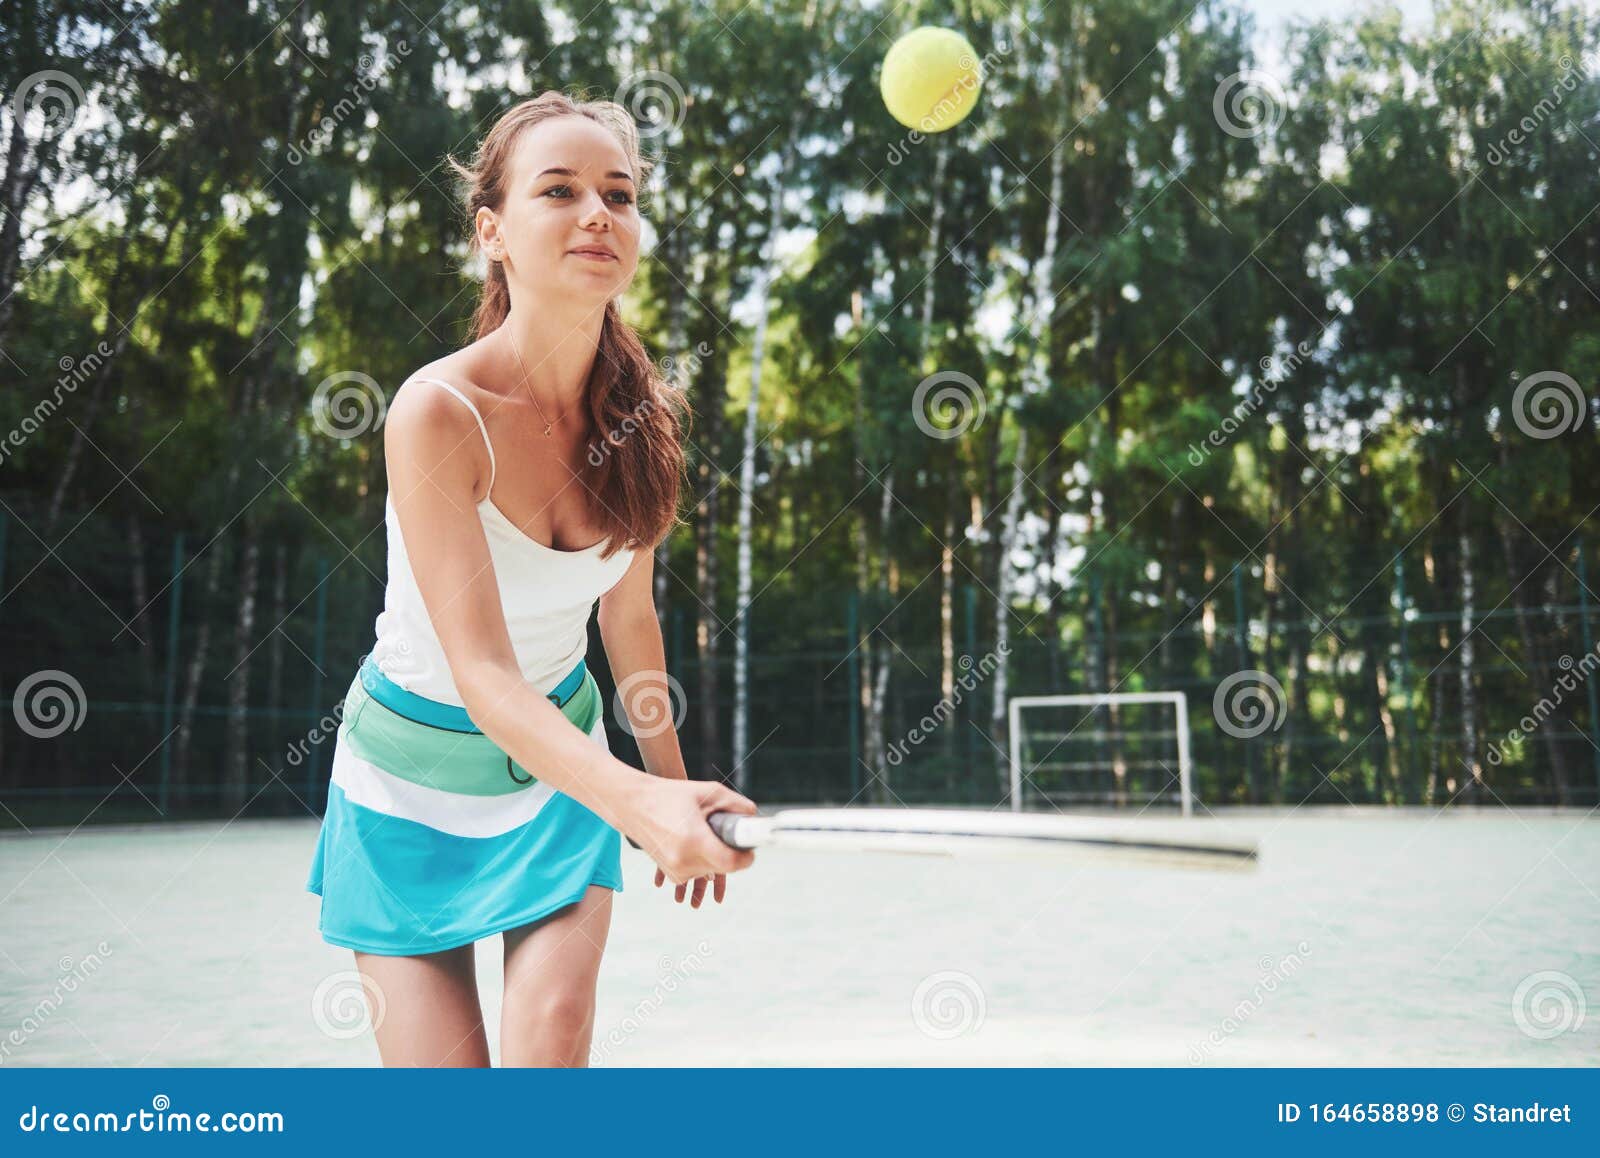 欧美网球美女图片素材高清壁纸 -桌面天下（Desktx.com）